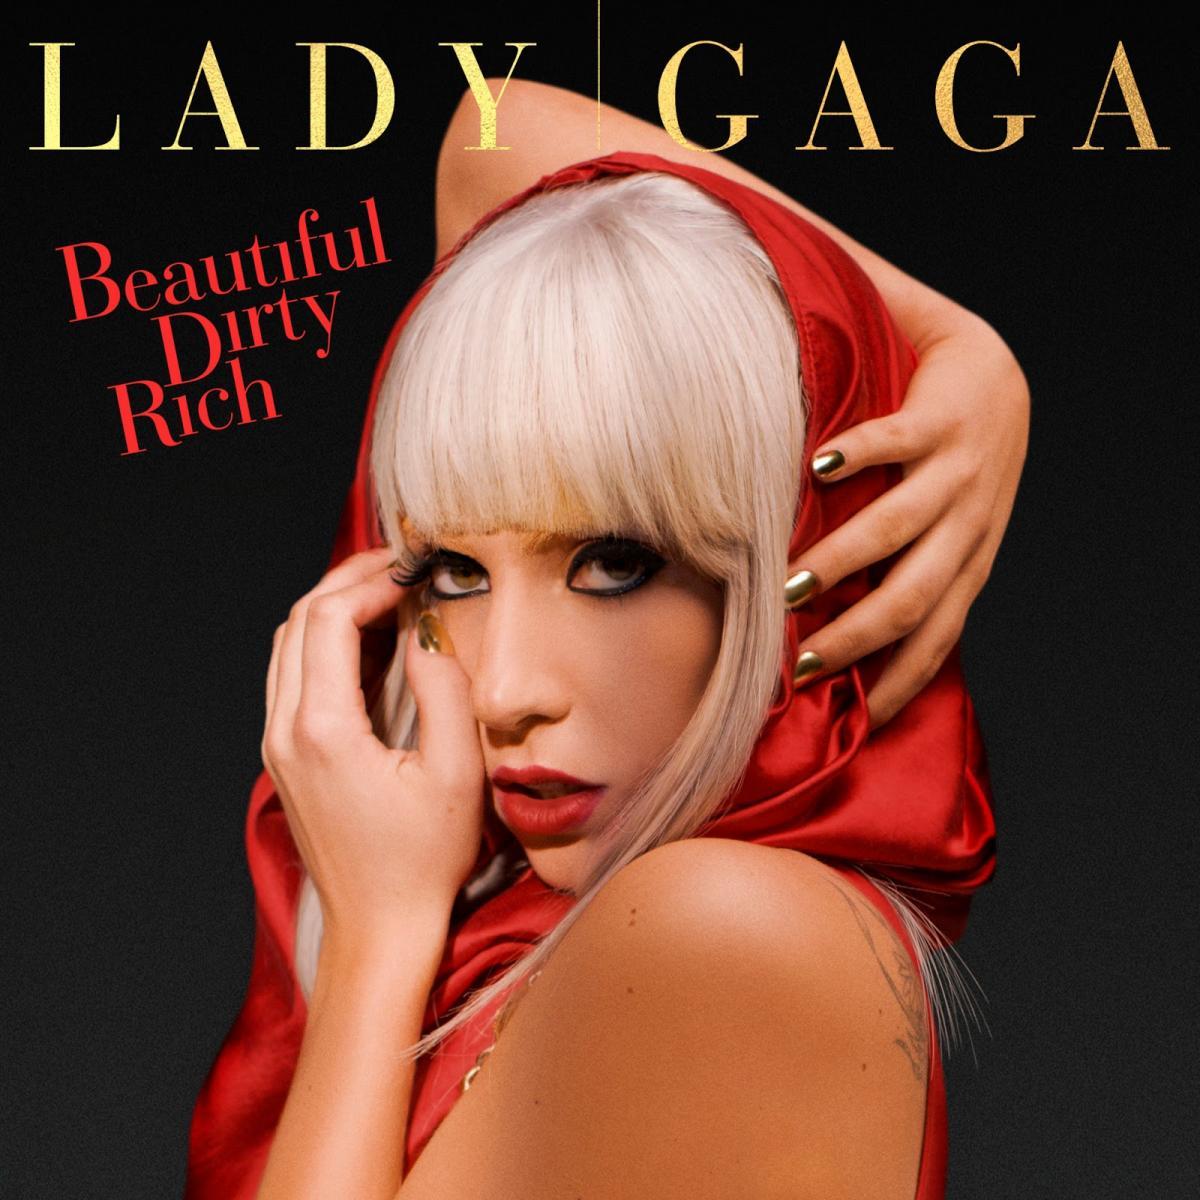 Леди гага популярные песни. Леди Гага 2008. Леди Гага beautiful, Dirty, Rich. Леди Гага красивая. Леди Гага с короткой стрижкой.